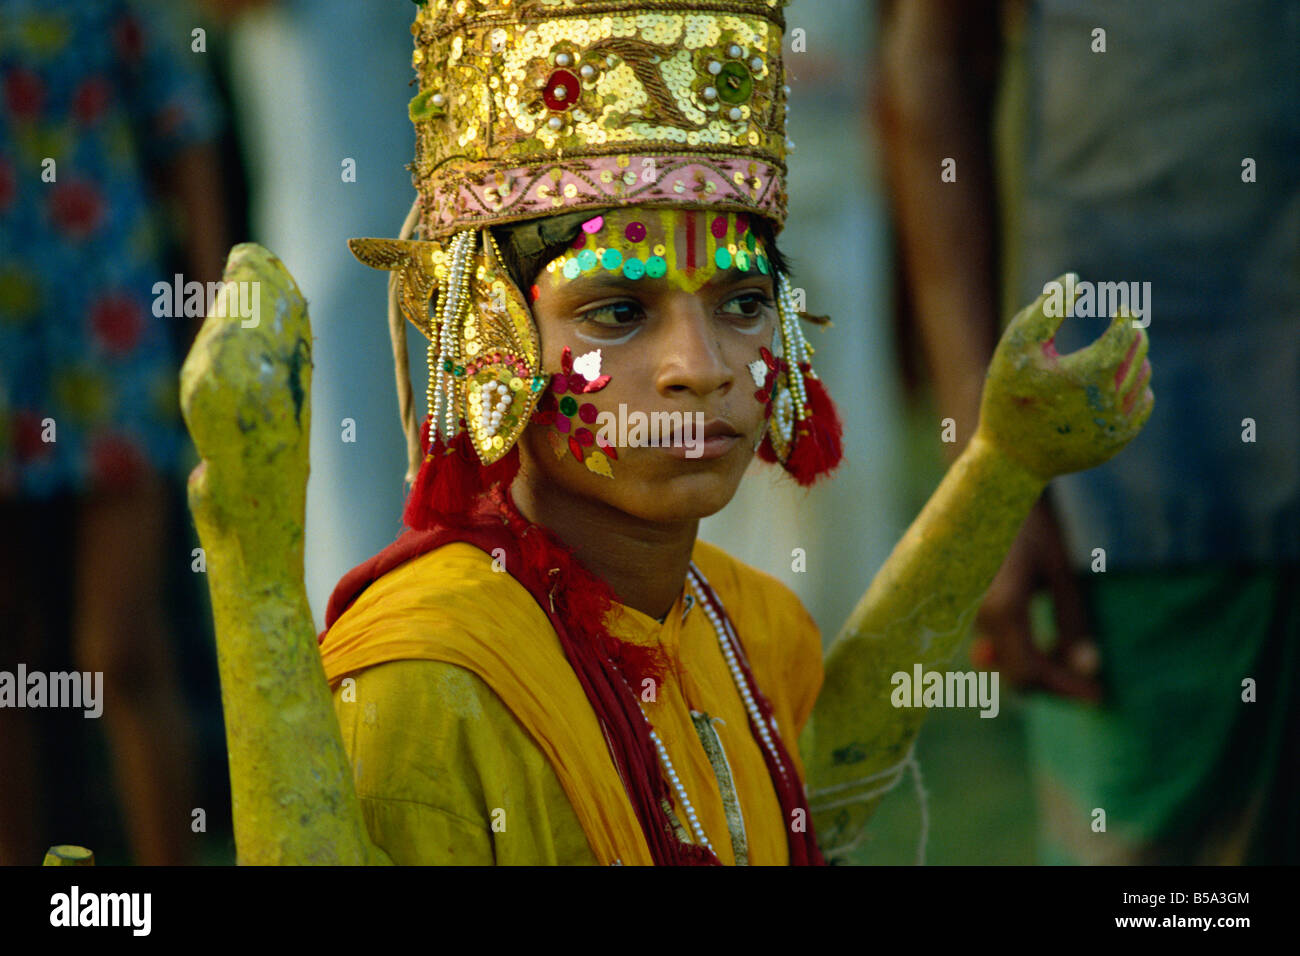 Schauspieler in der Ramlilla das Bühnenstück des hinduistischen Epos Ramayana Varanasi Uttar Pradesh Staat Indien Asien Stockfoto